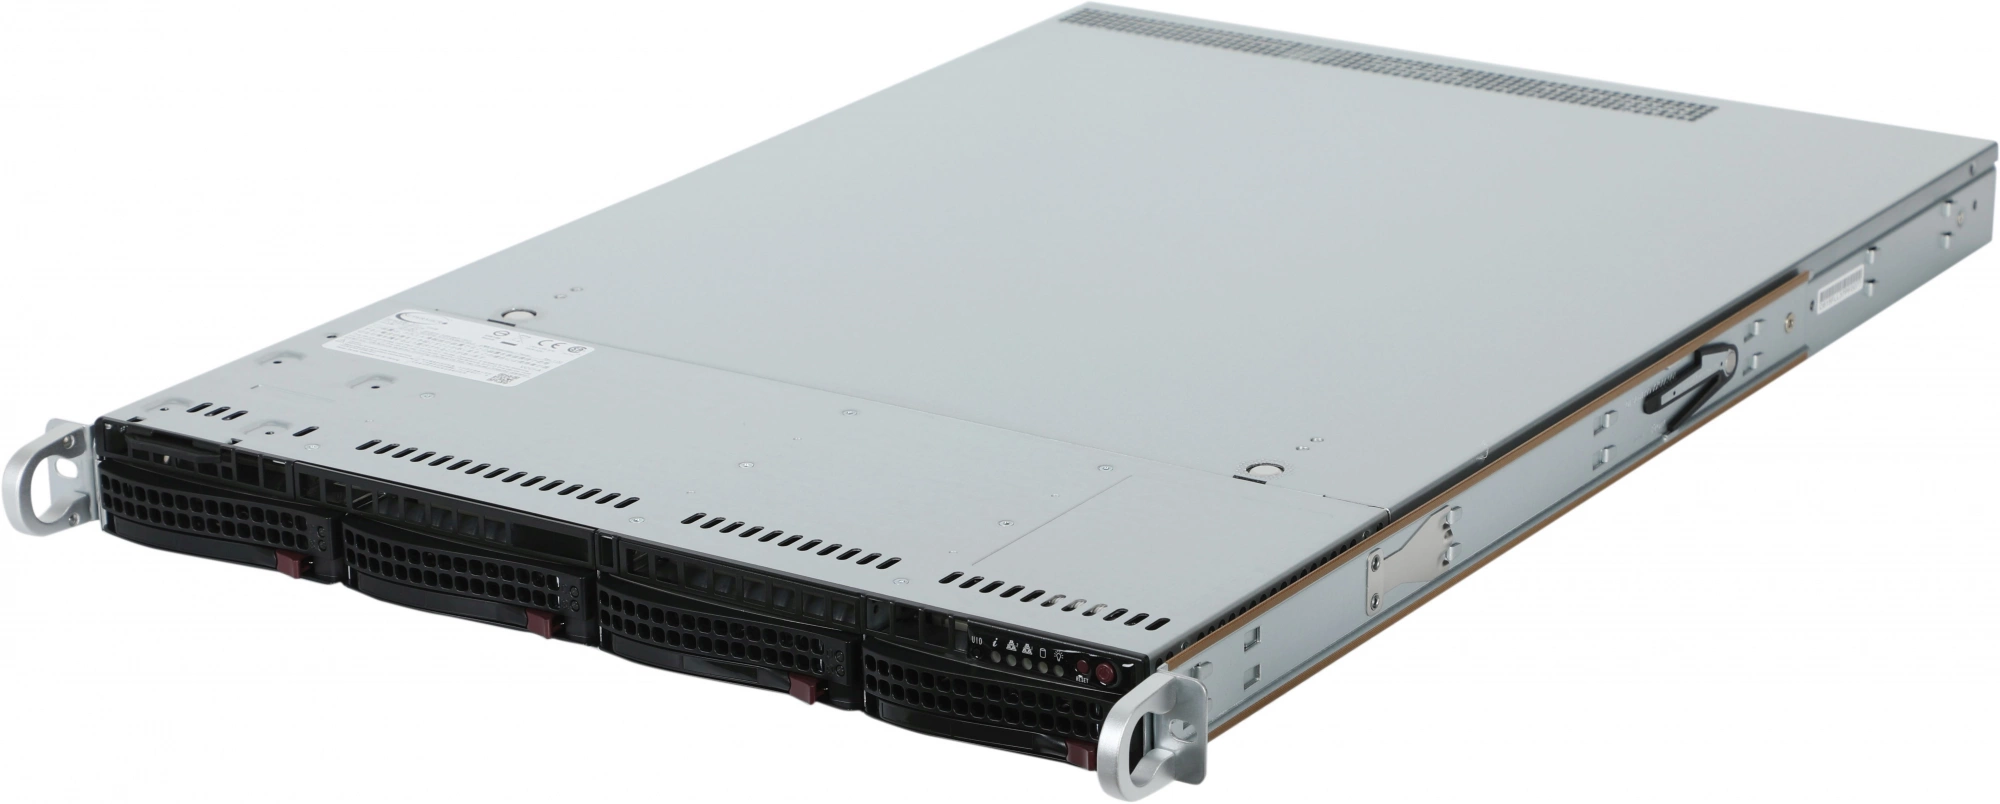 Сервер IRU Rock s1204p 2x5217 4x32Gb 1x500Gb M.2 SSD 1x С621 AST2500 2xGigEth 2x750W w/o OS (2014041)